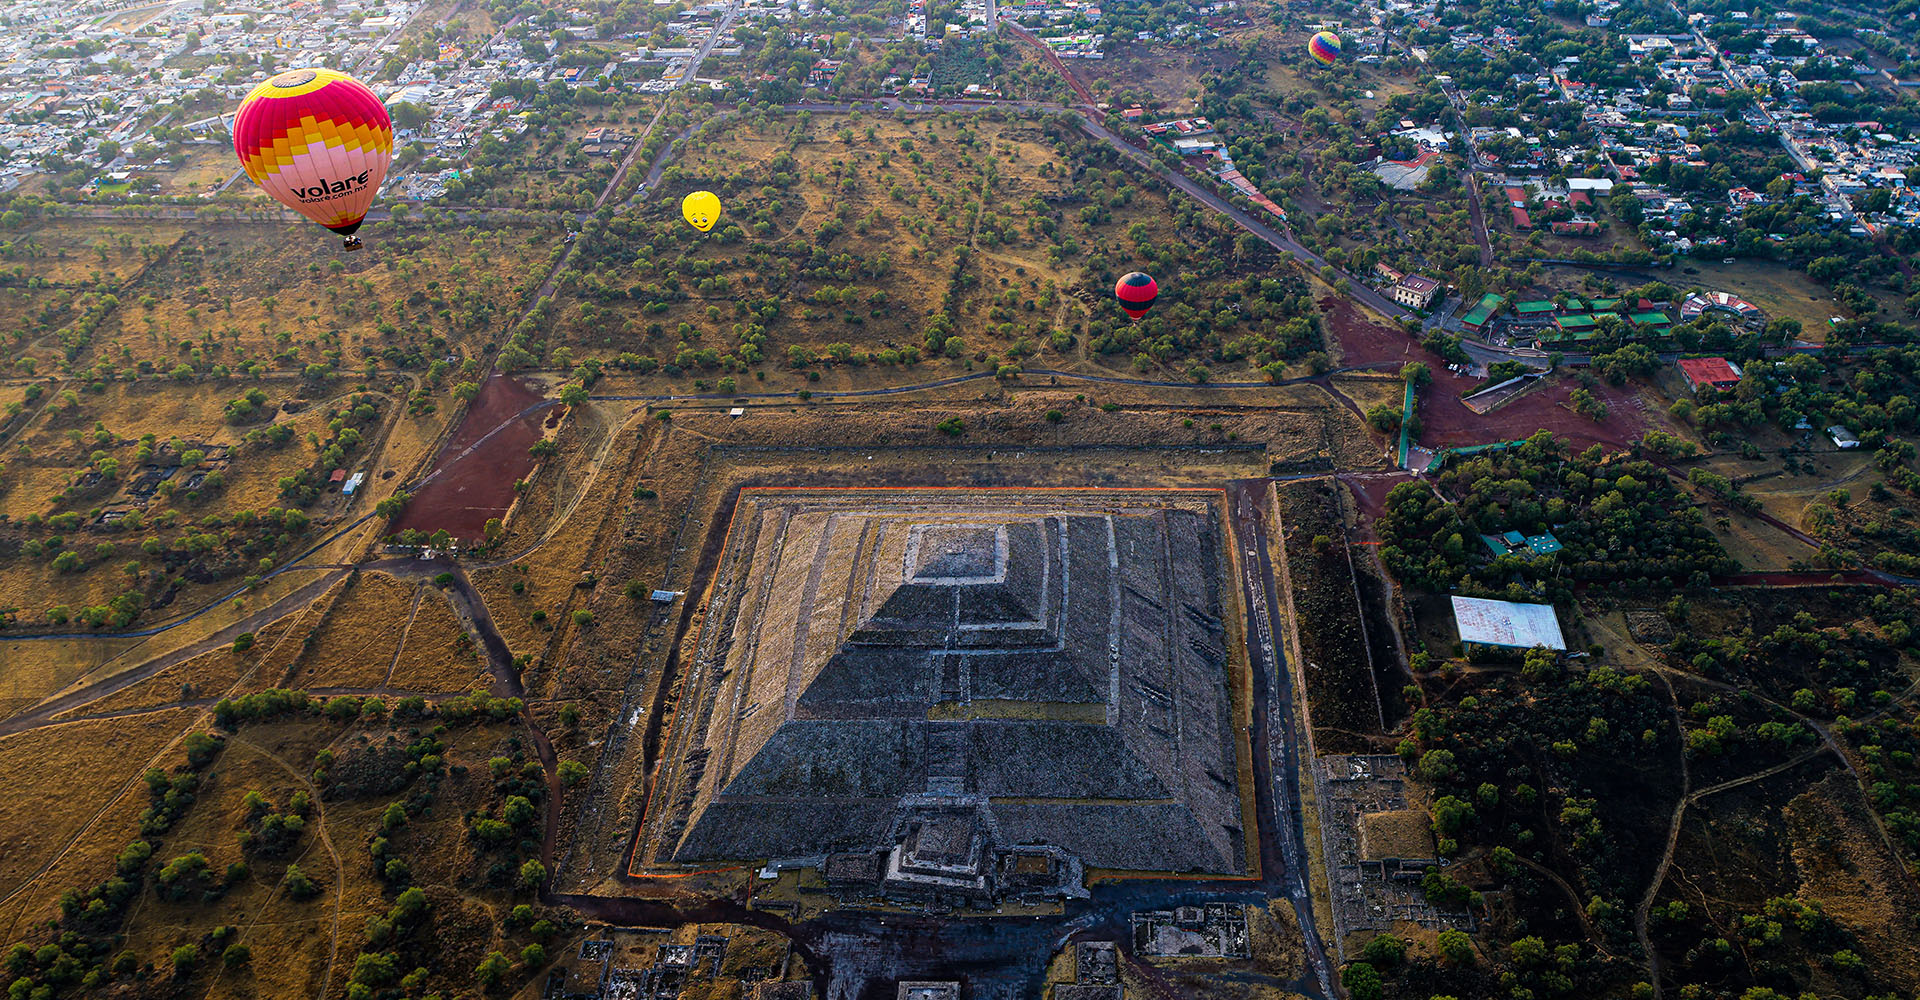 Священный город Теотиуакан - древний образец урбанизации и масштабного планирования